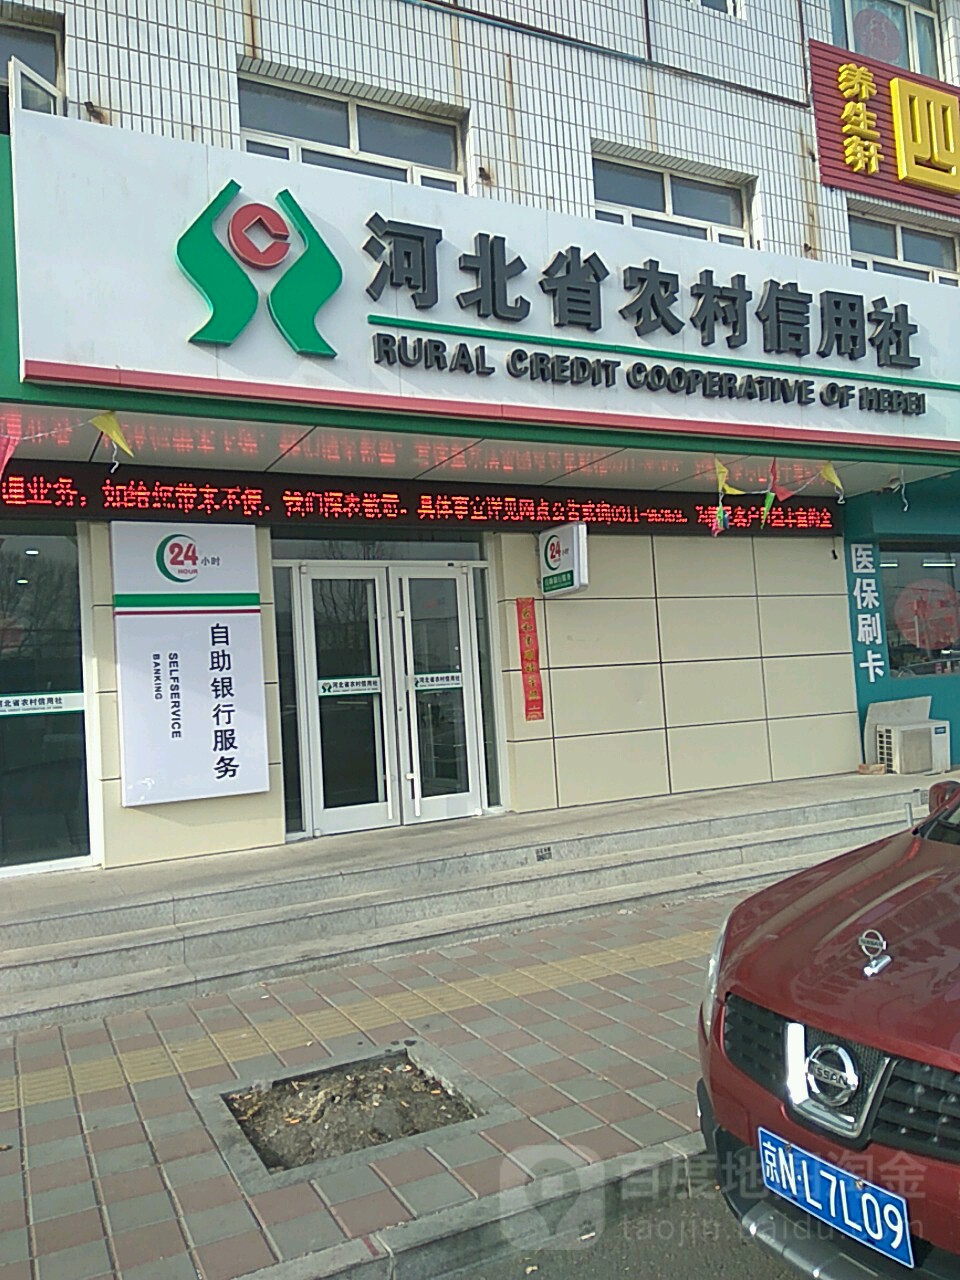 河北省農村信用社24小時自助銀行服務